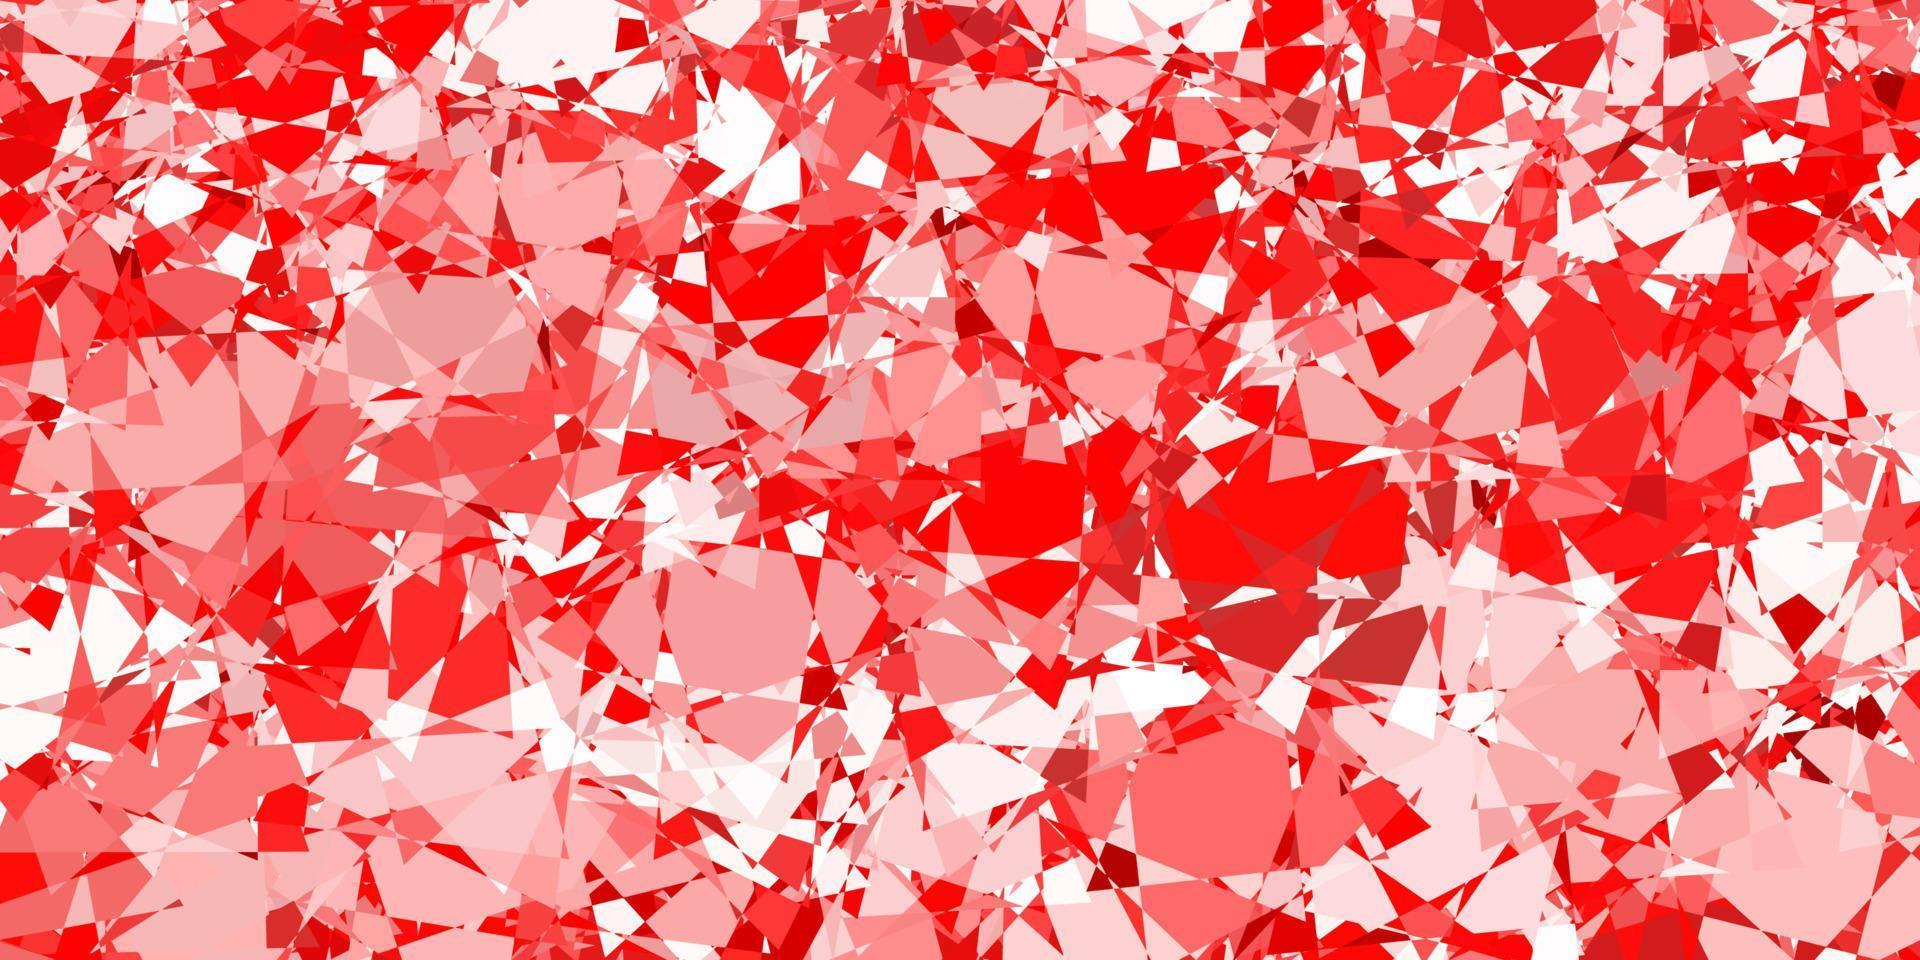 patrón de vector rojo claro con formas poligonales.